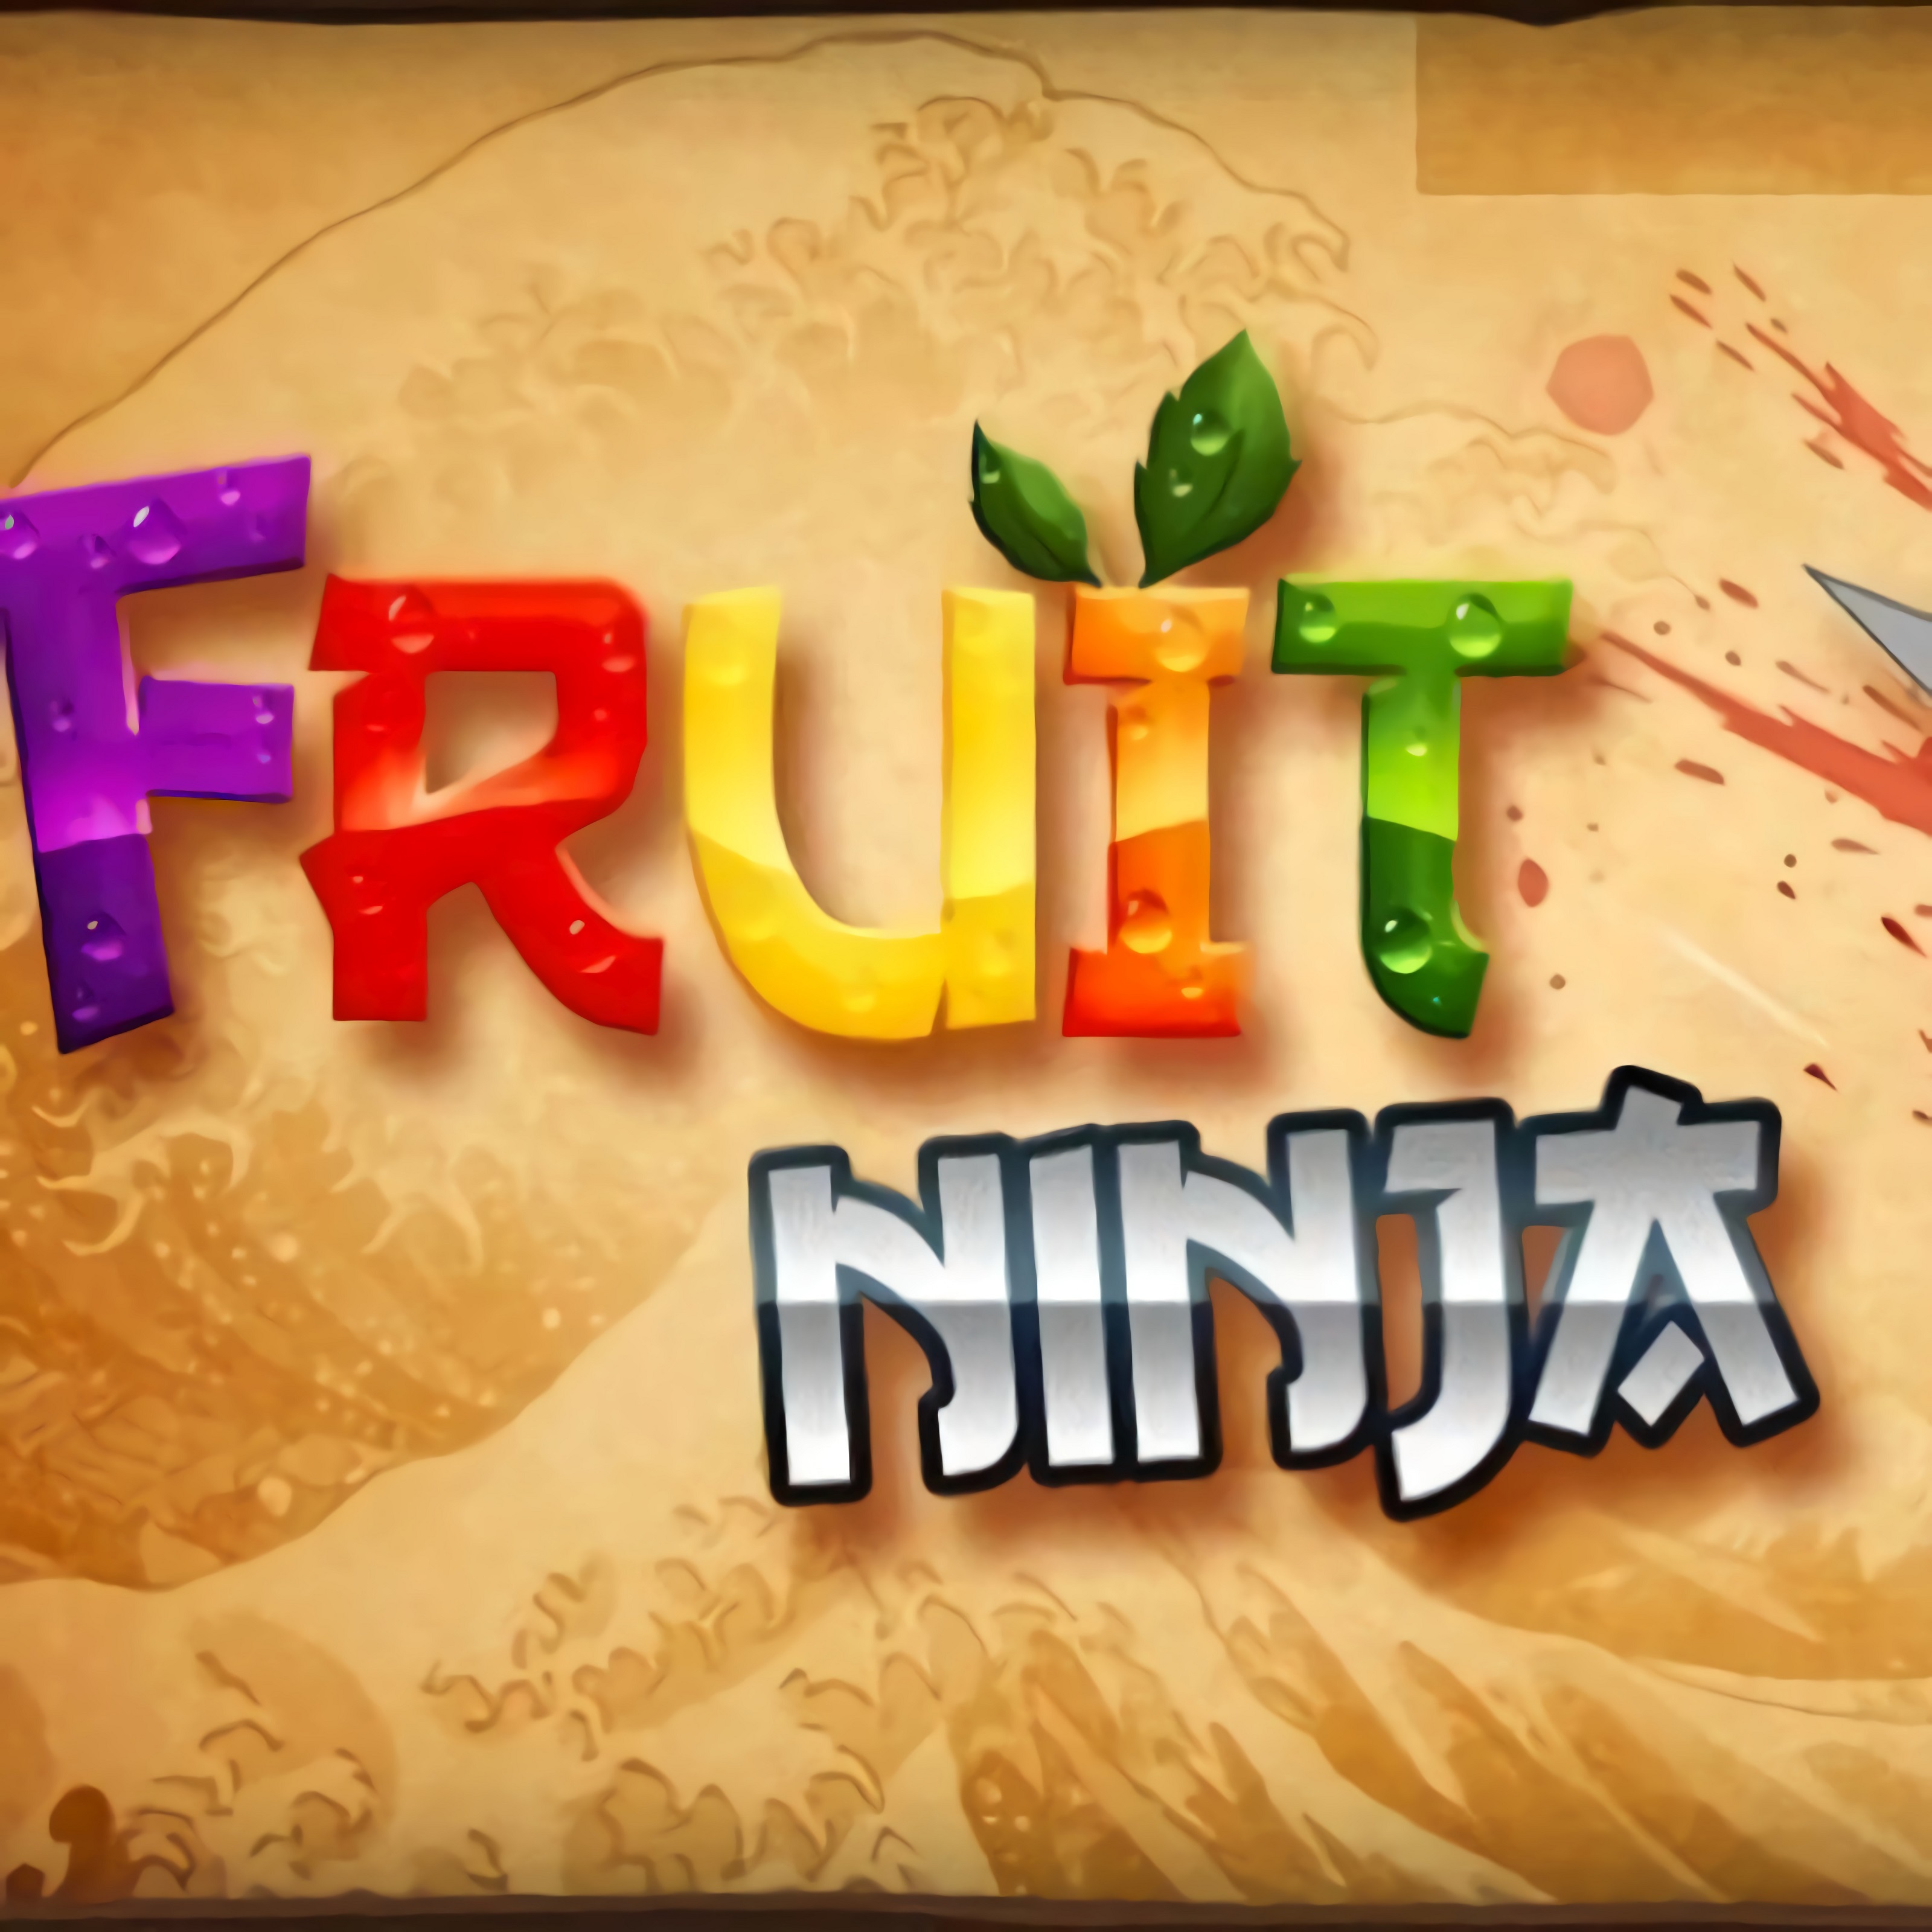 Fruit Ninja Online game play on Friv2Online